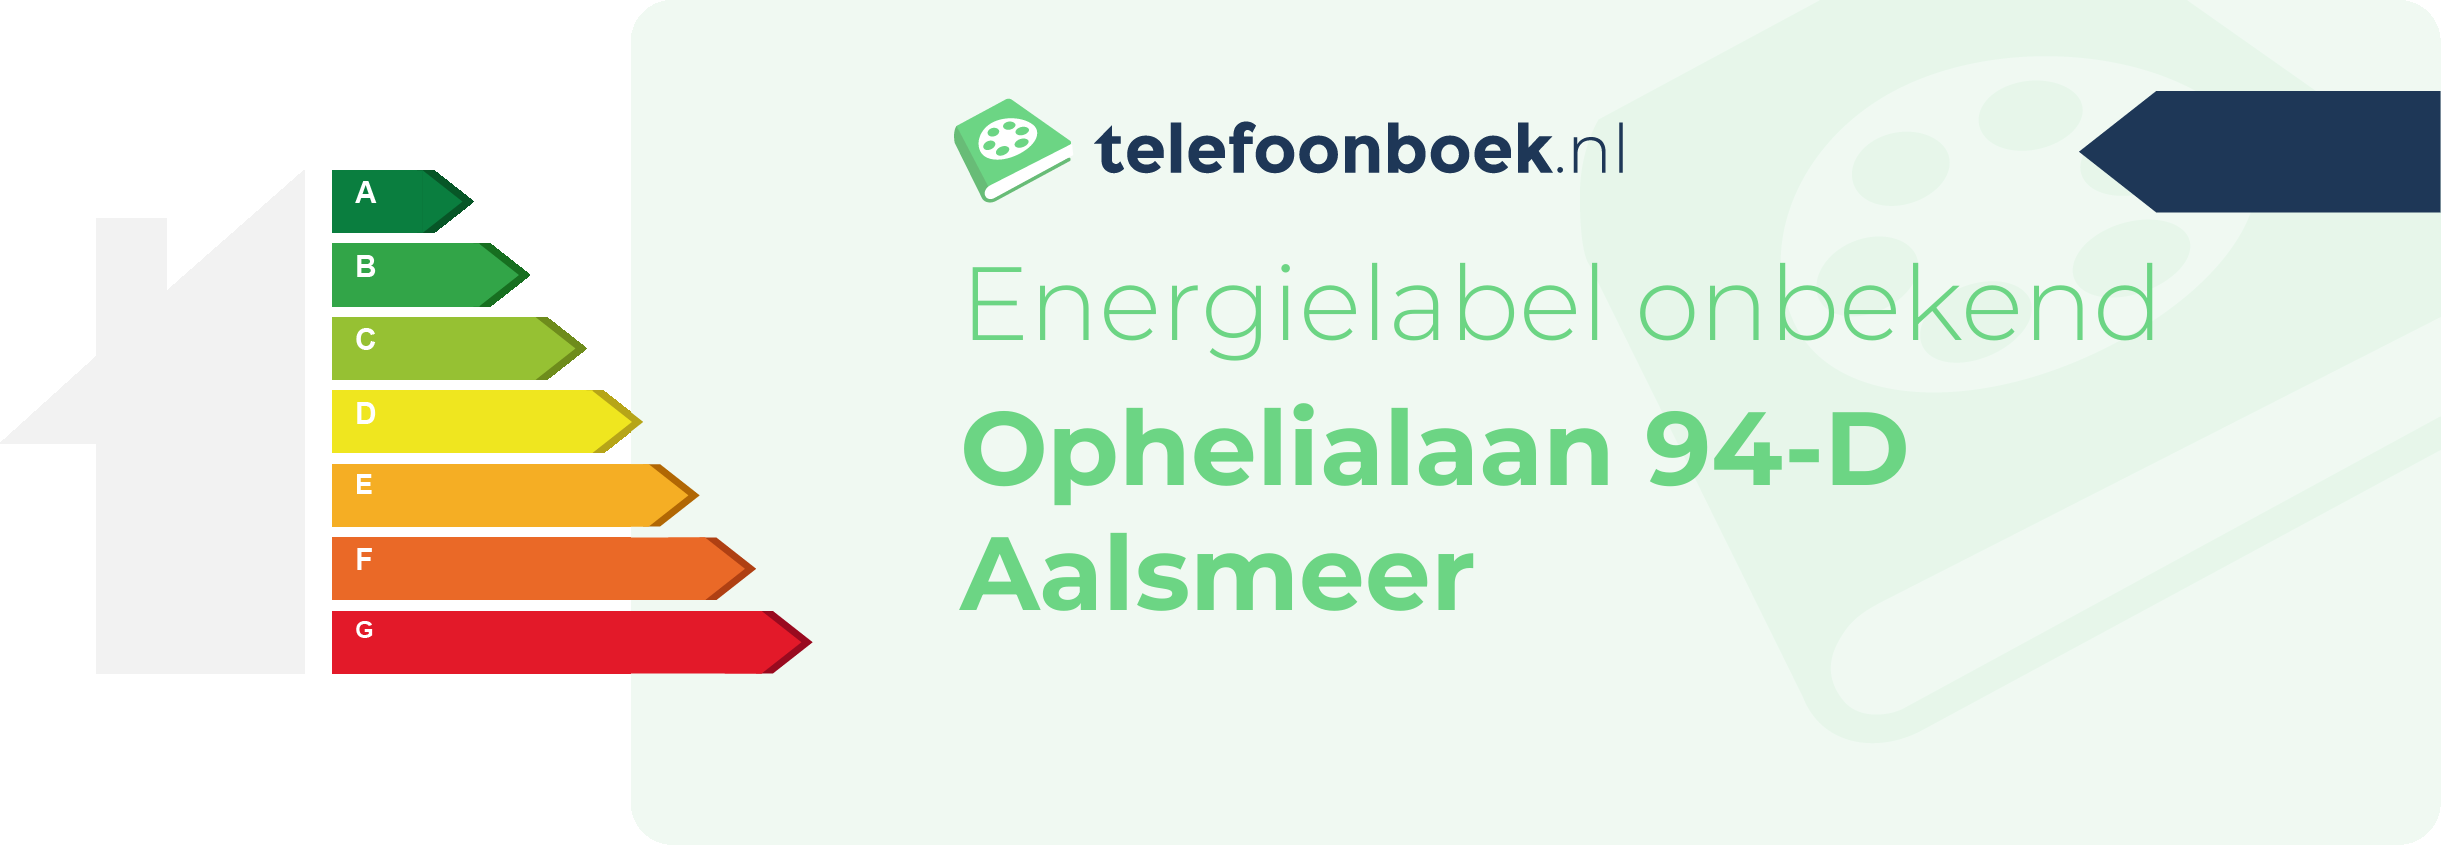 Energielabel Ophelialaan 94-D Aalsmeer